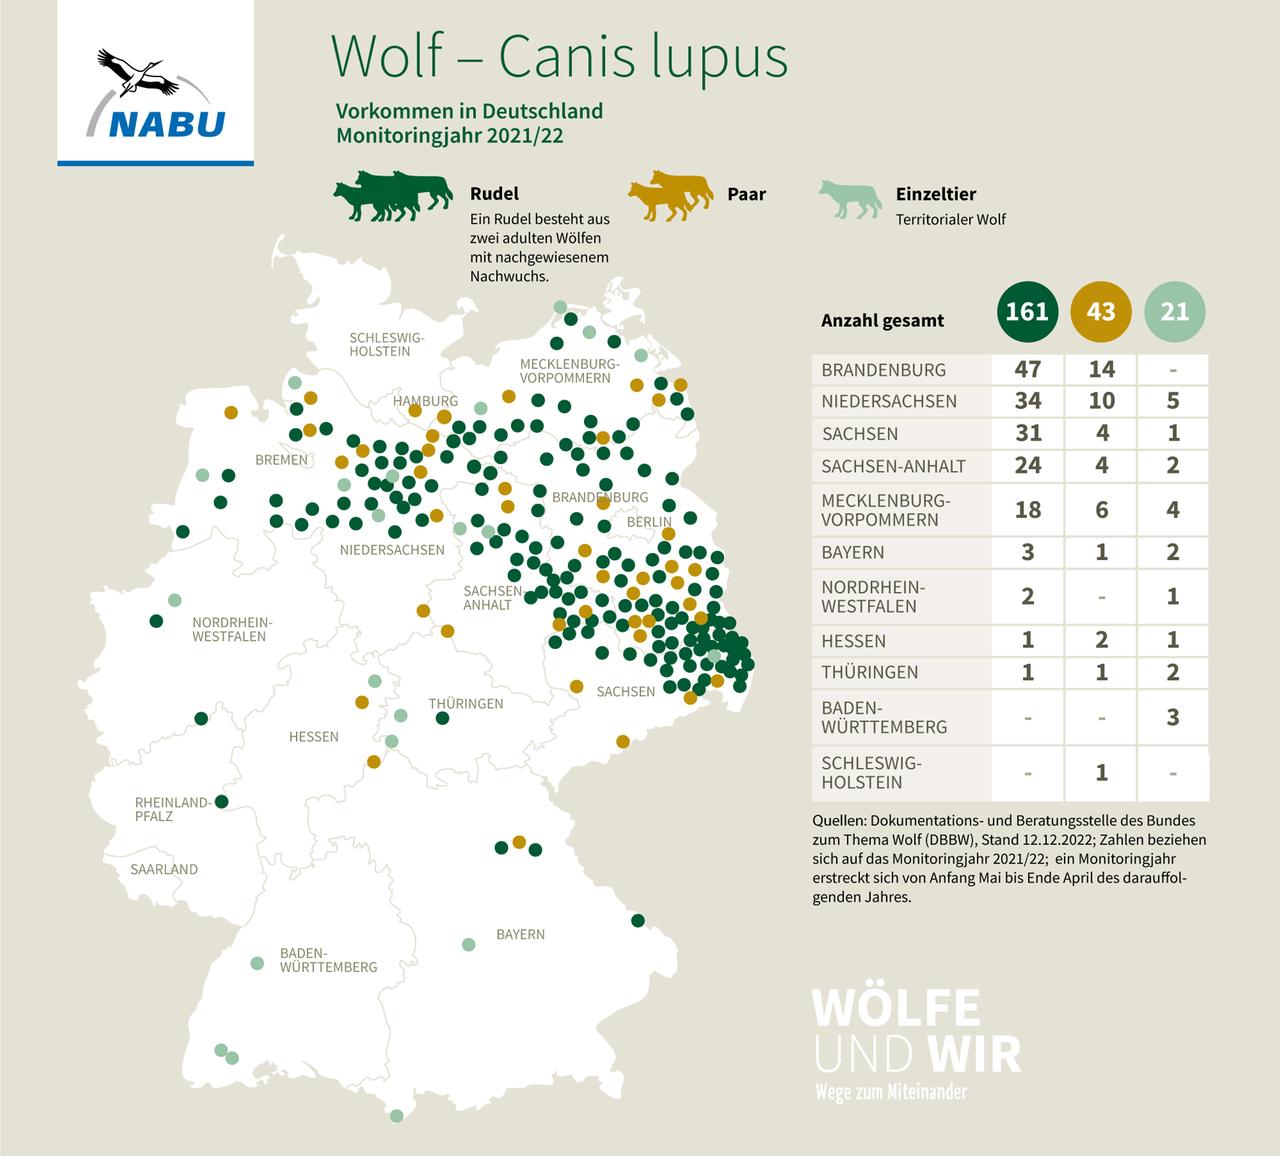 Eine Grafik zur Verteilung von Wölfen in Deutschland